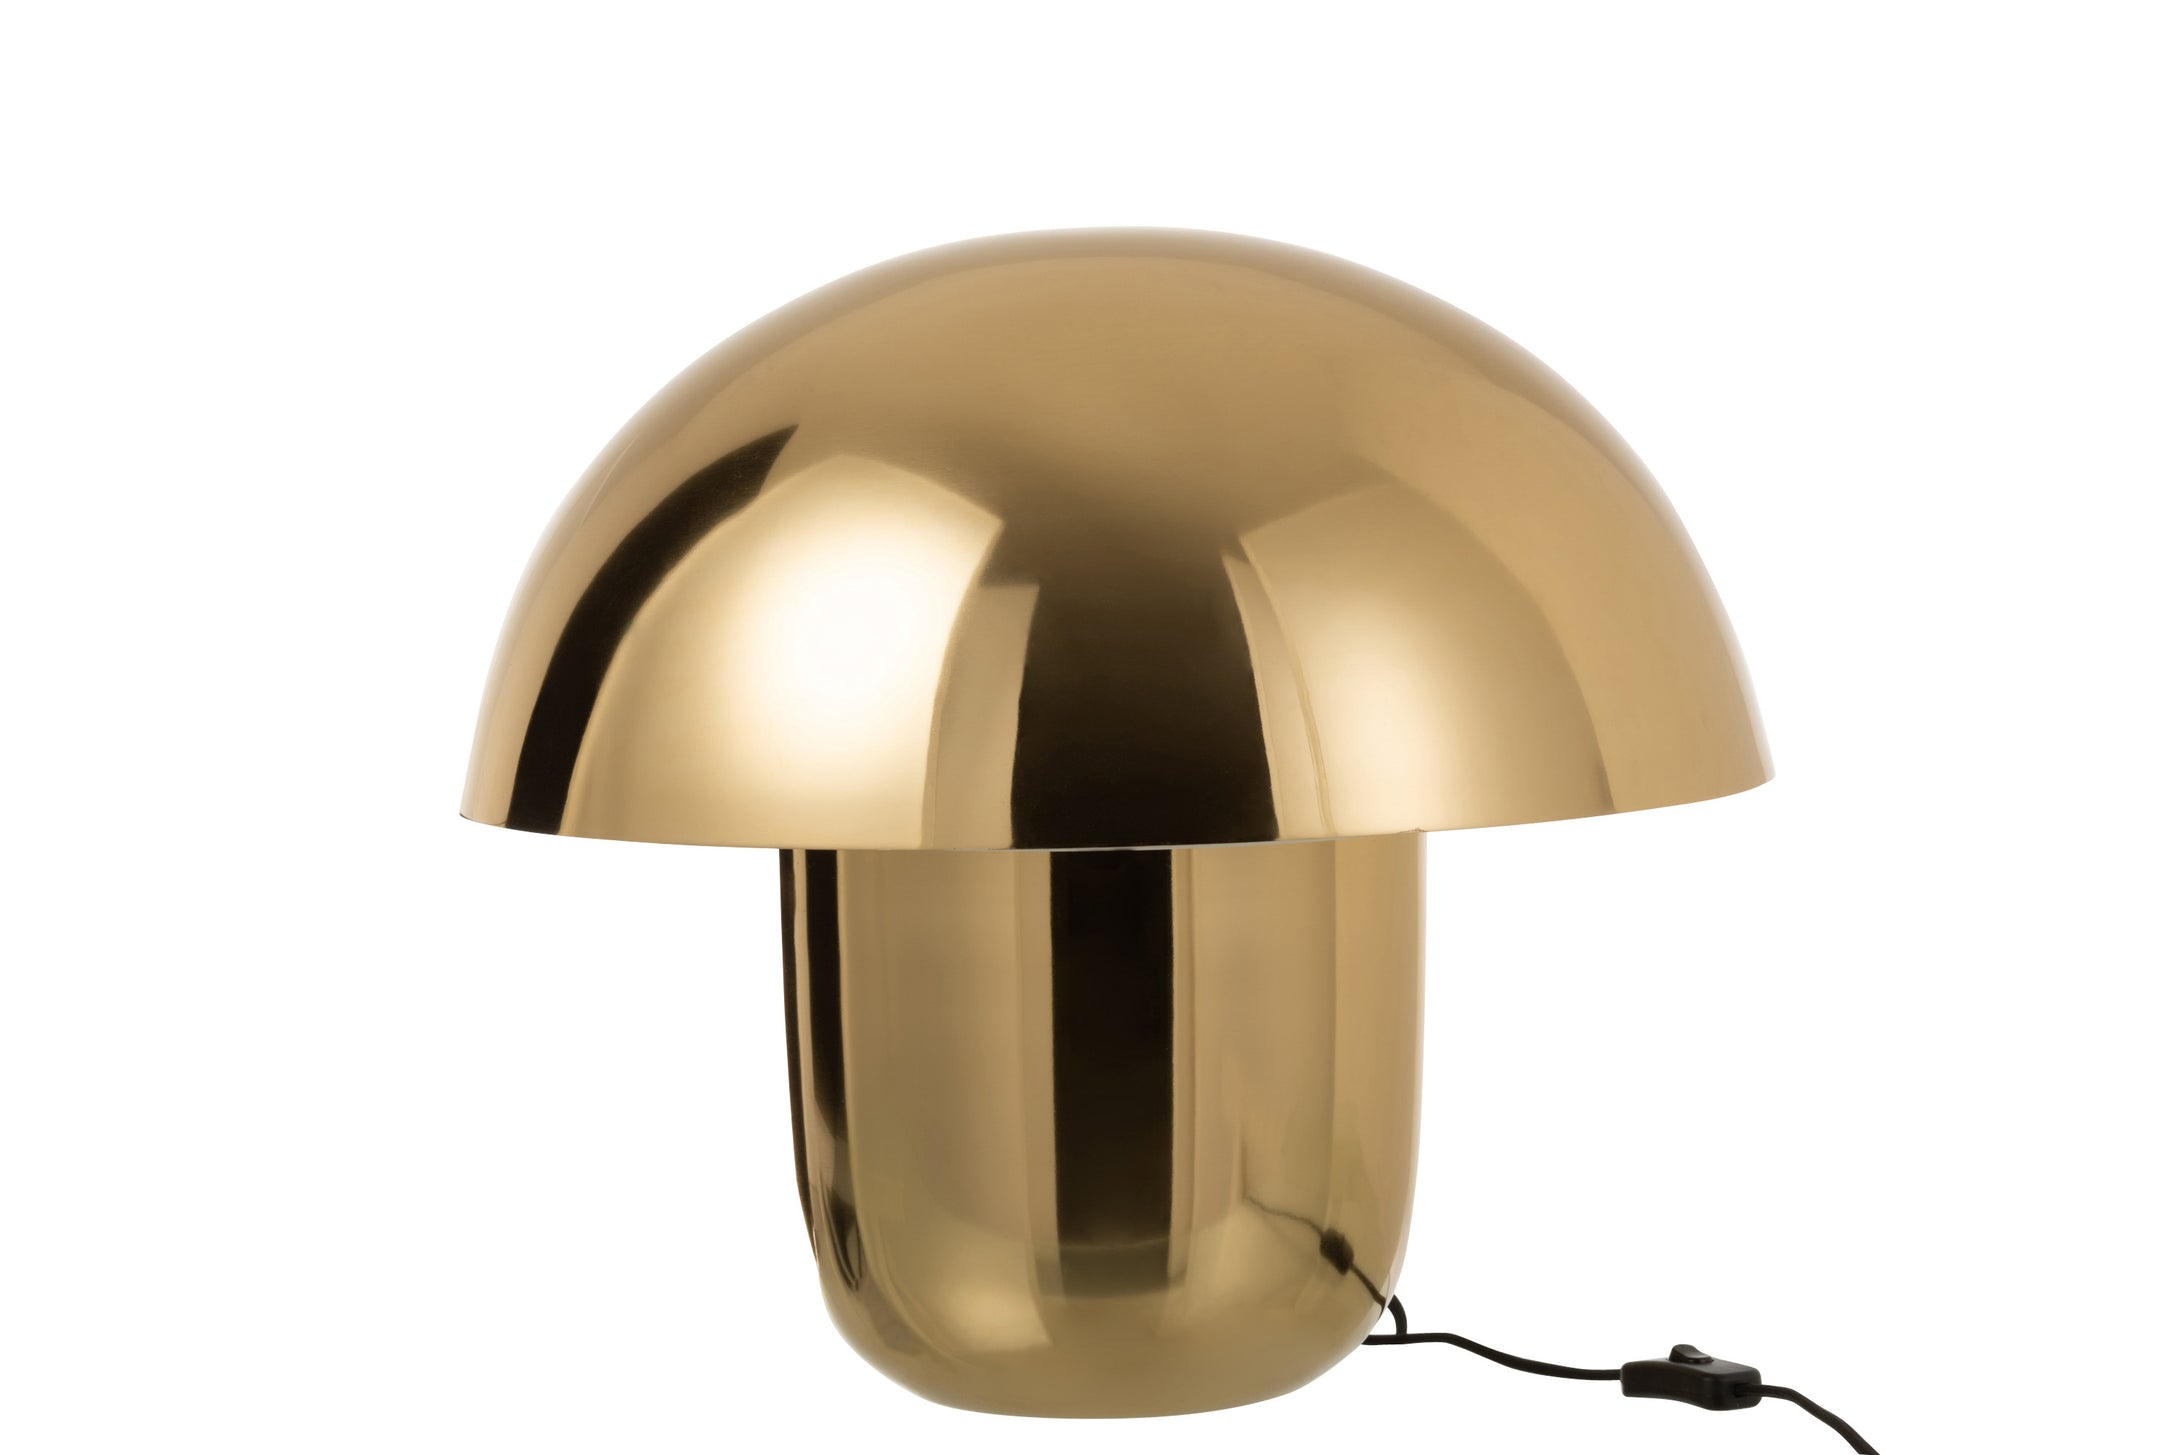 Tischlampe in Form eines Pilzes, aus glänzendem goldfarbenem Metall, vom Design an einen Steinpilz erinnernd.